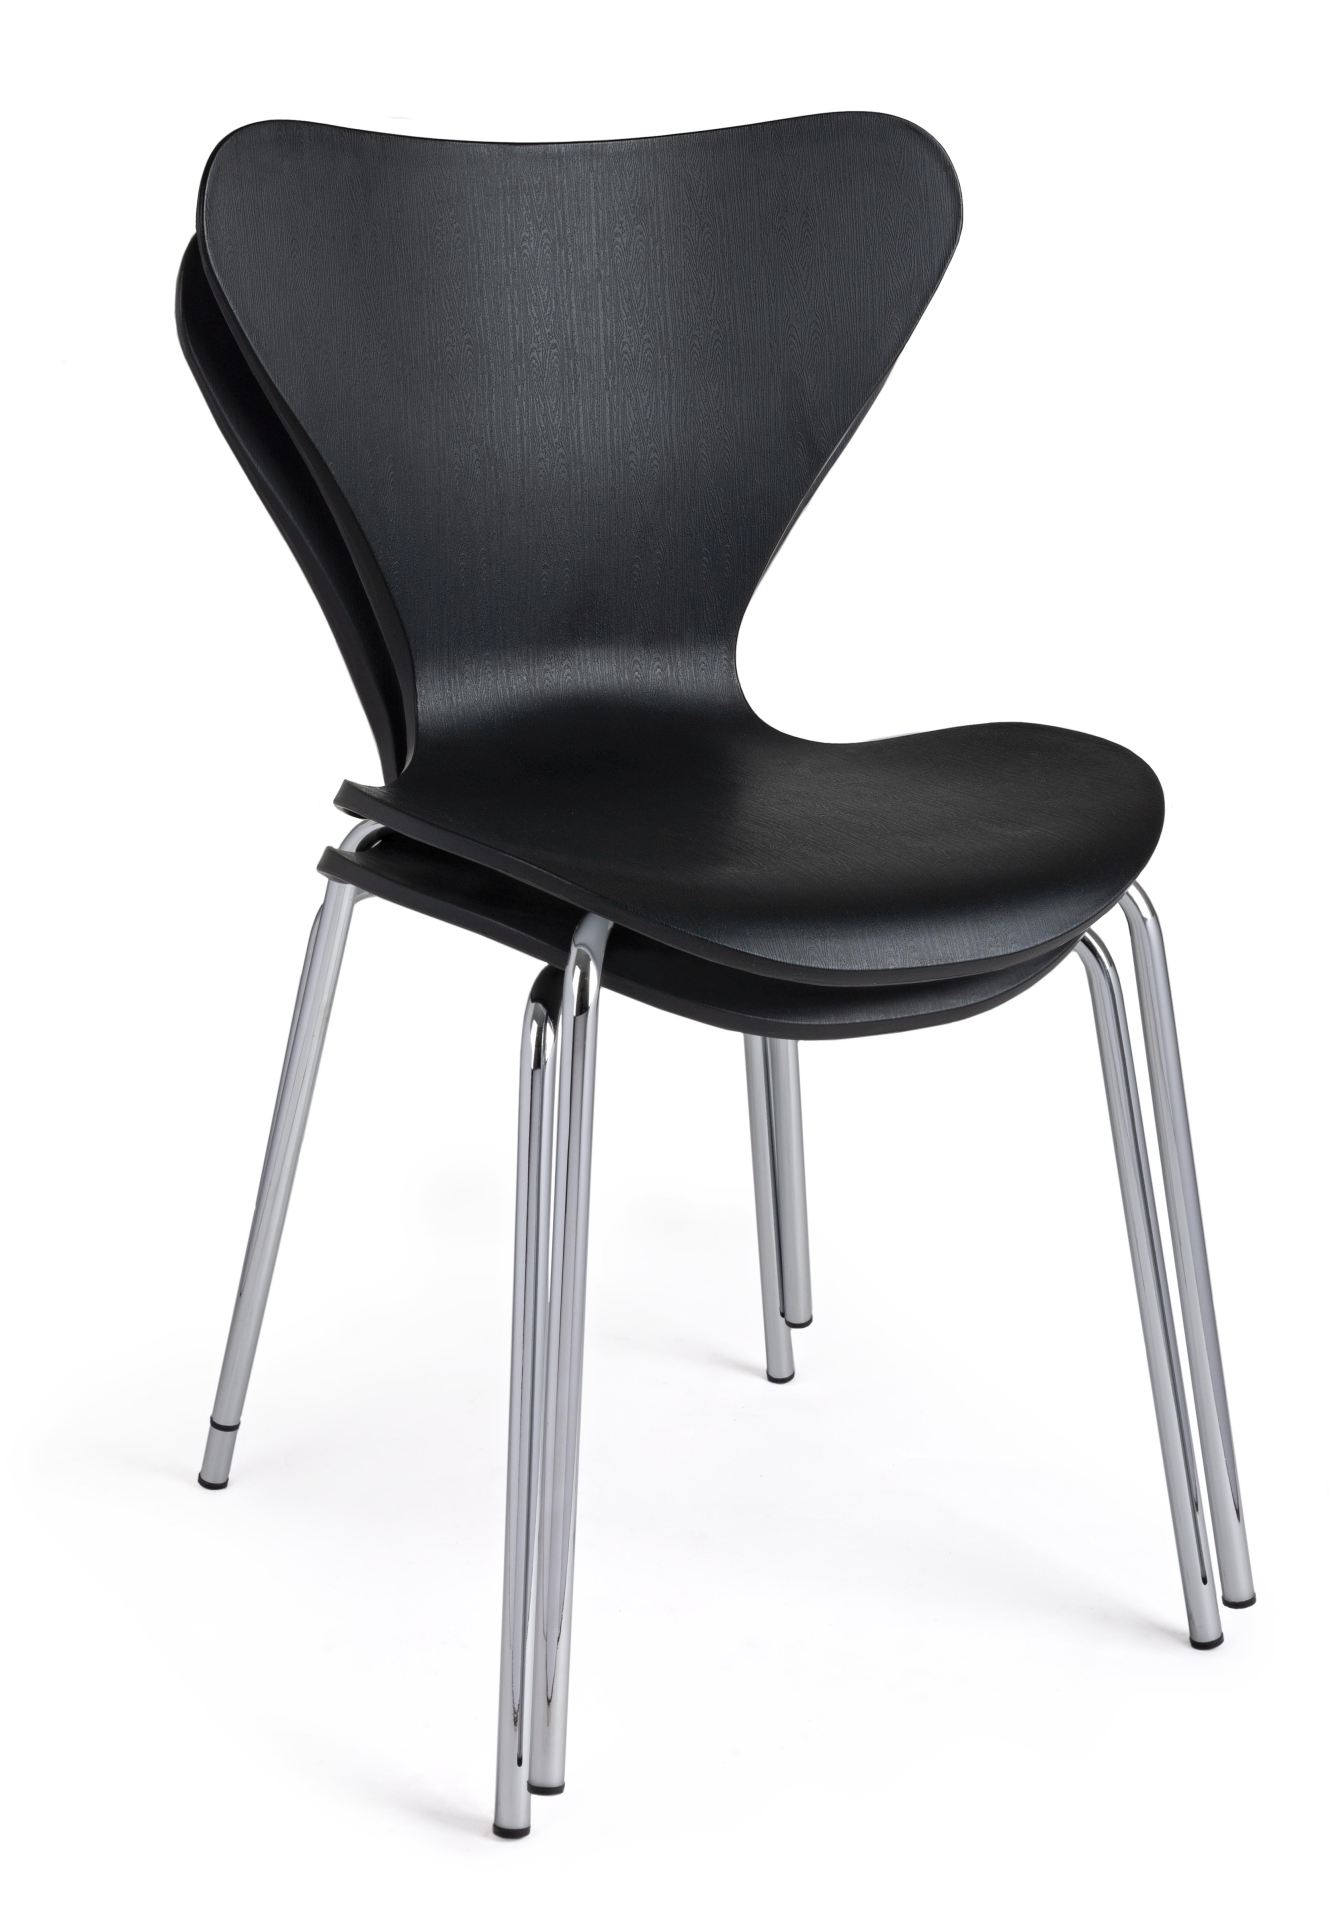 Der Stuhl Tessa überzeugt mit seinem modernem Design. Gefertigt wurde der Stuhl aus Kunststoff, welcher einen schwarzen Farbton besitzt. Das Gestell ist aus Metall und ist in einer silbernen Farbe. Die Sitzhöhe beträgt 45 cm.